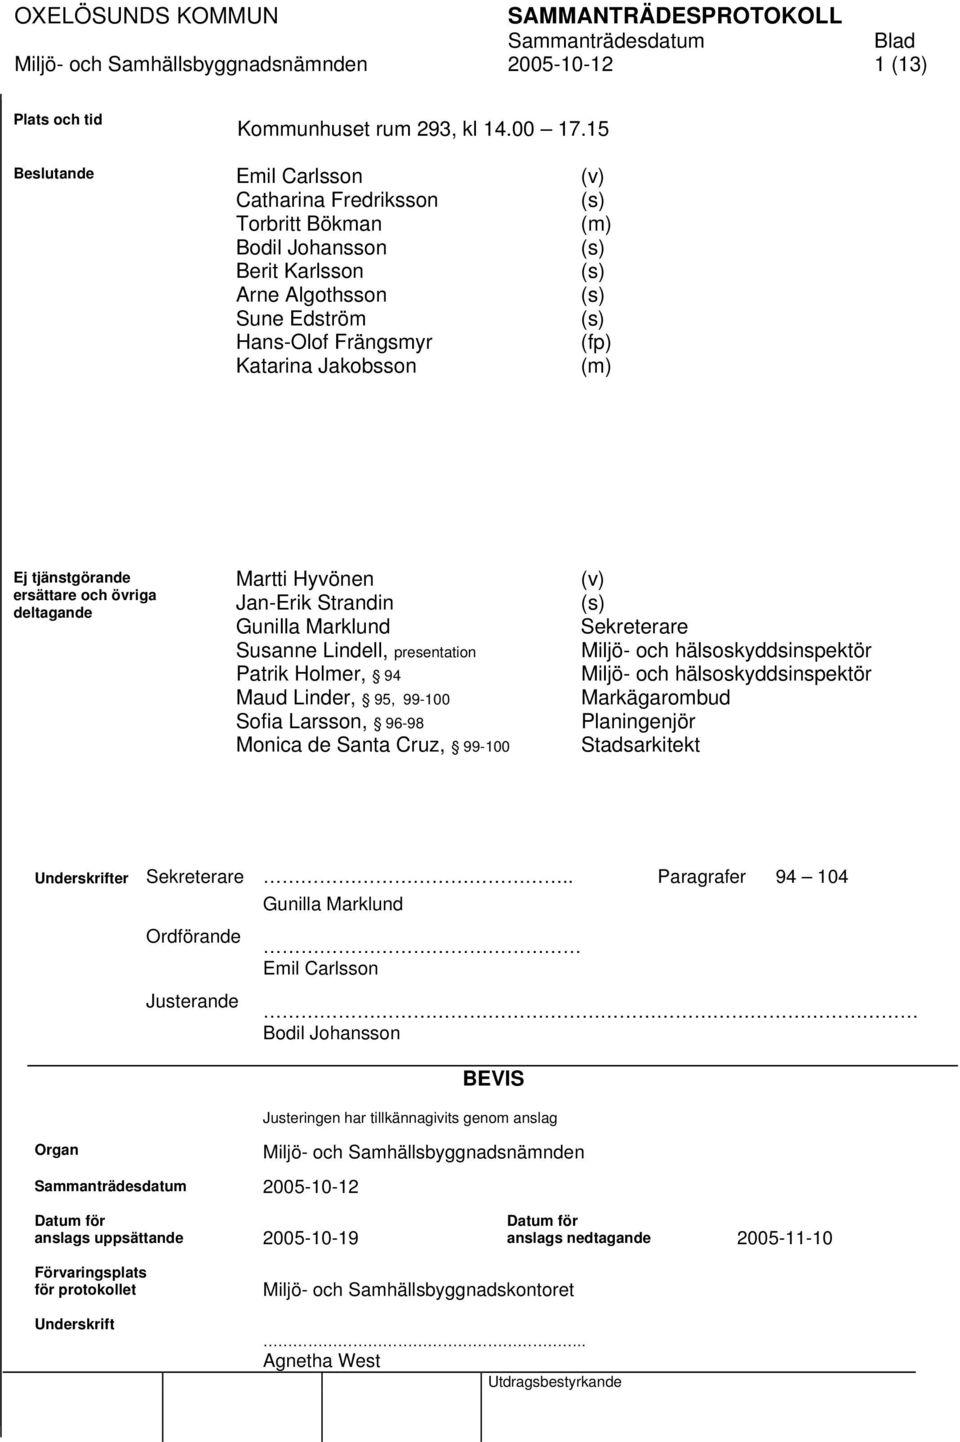 (m) Ej tjänstgörande ersättare och övriga deltagande Martti Hyvönen Jan-Erik Strandin Gunilla Marklund Susanne Lindell, presentation Patrik Holmer, 94 Maud Linder, 95, 99-100 Sofia Larsson, 96-98